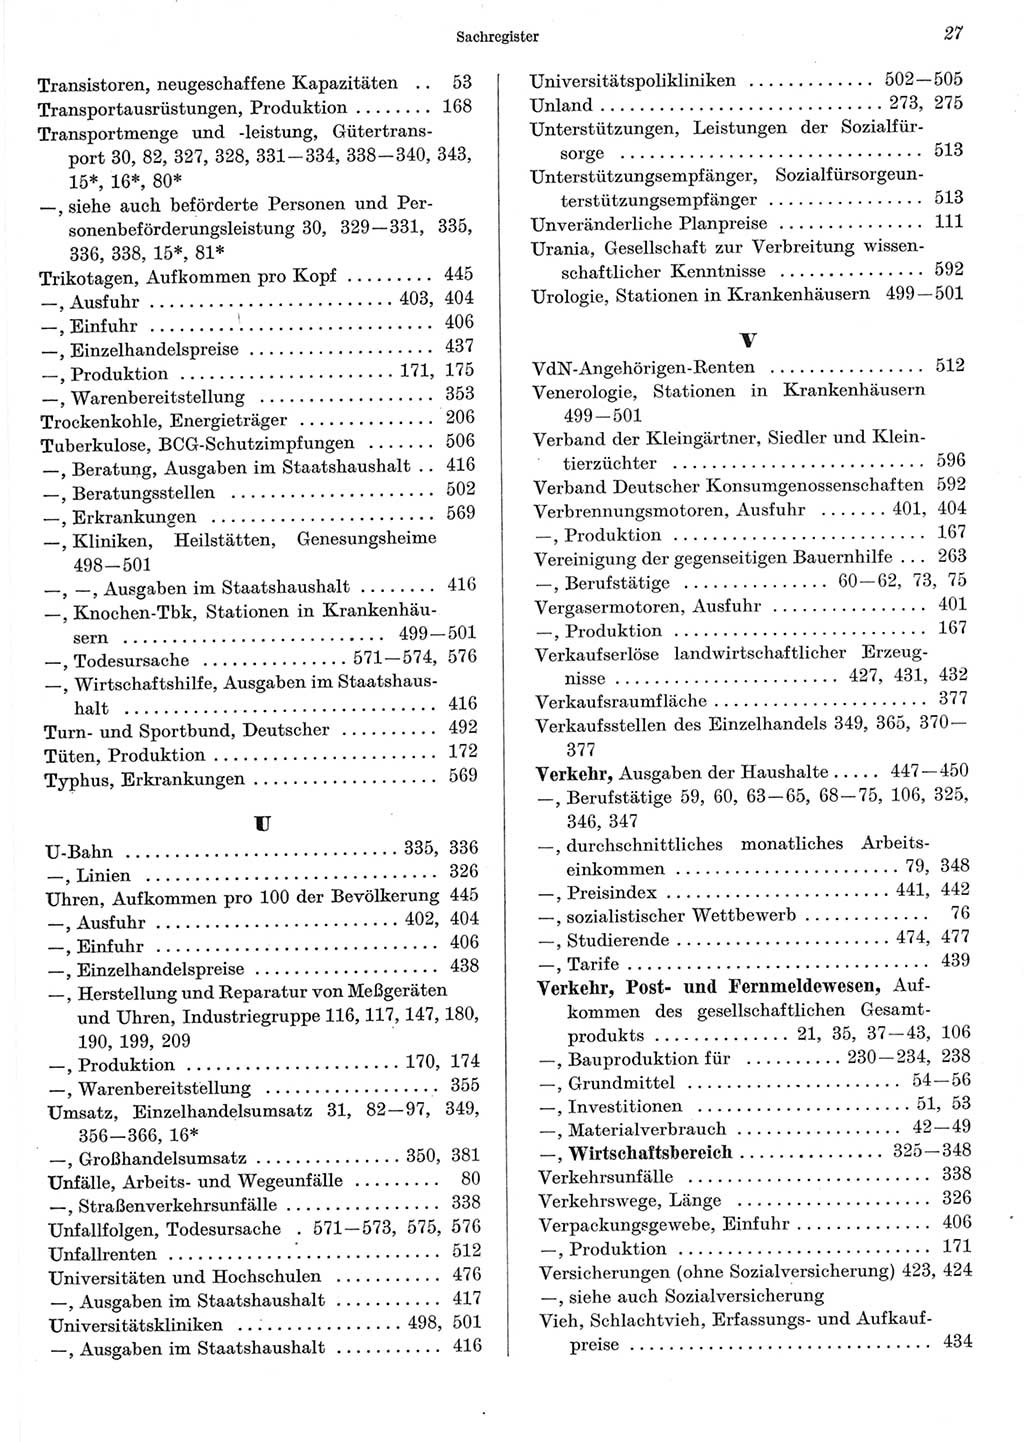 Statistisches Jahrbuch der Deutschen Demokratischen Republik (DDR) 1967, Seite 27 (Stat. Jb. DDR 1967, S. 27)